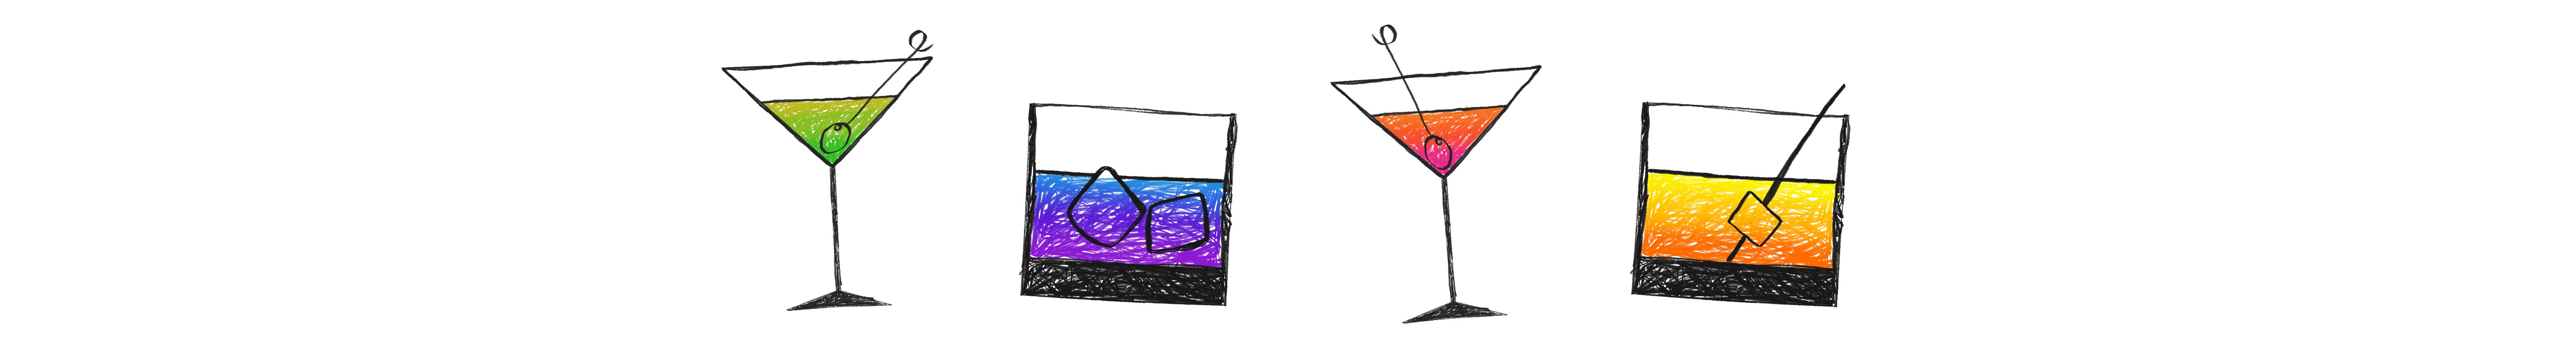 Martini's Graphic